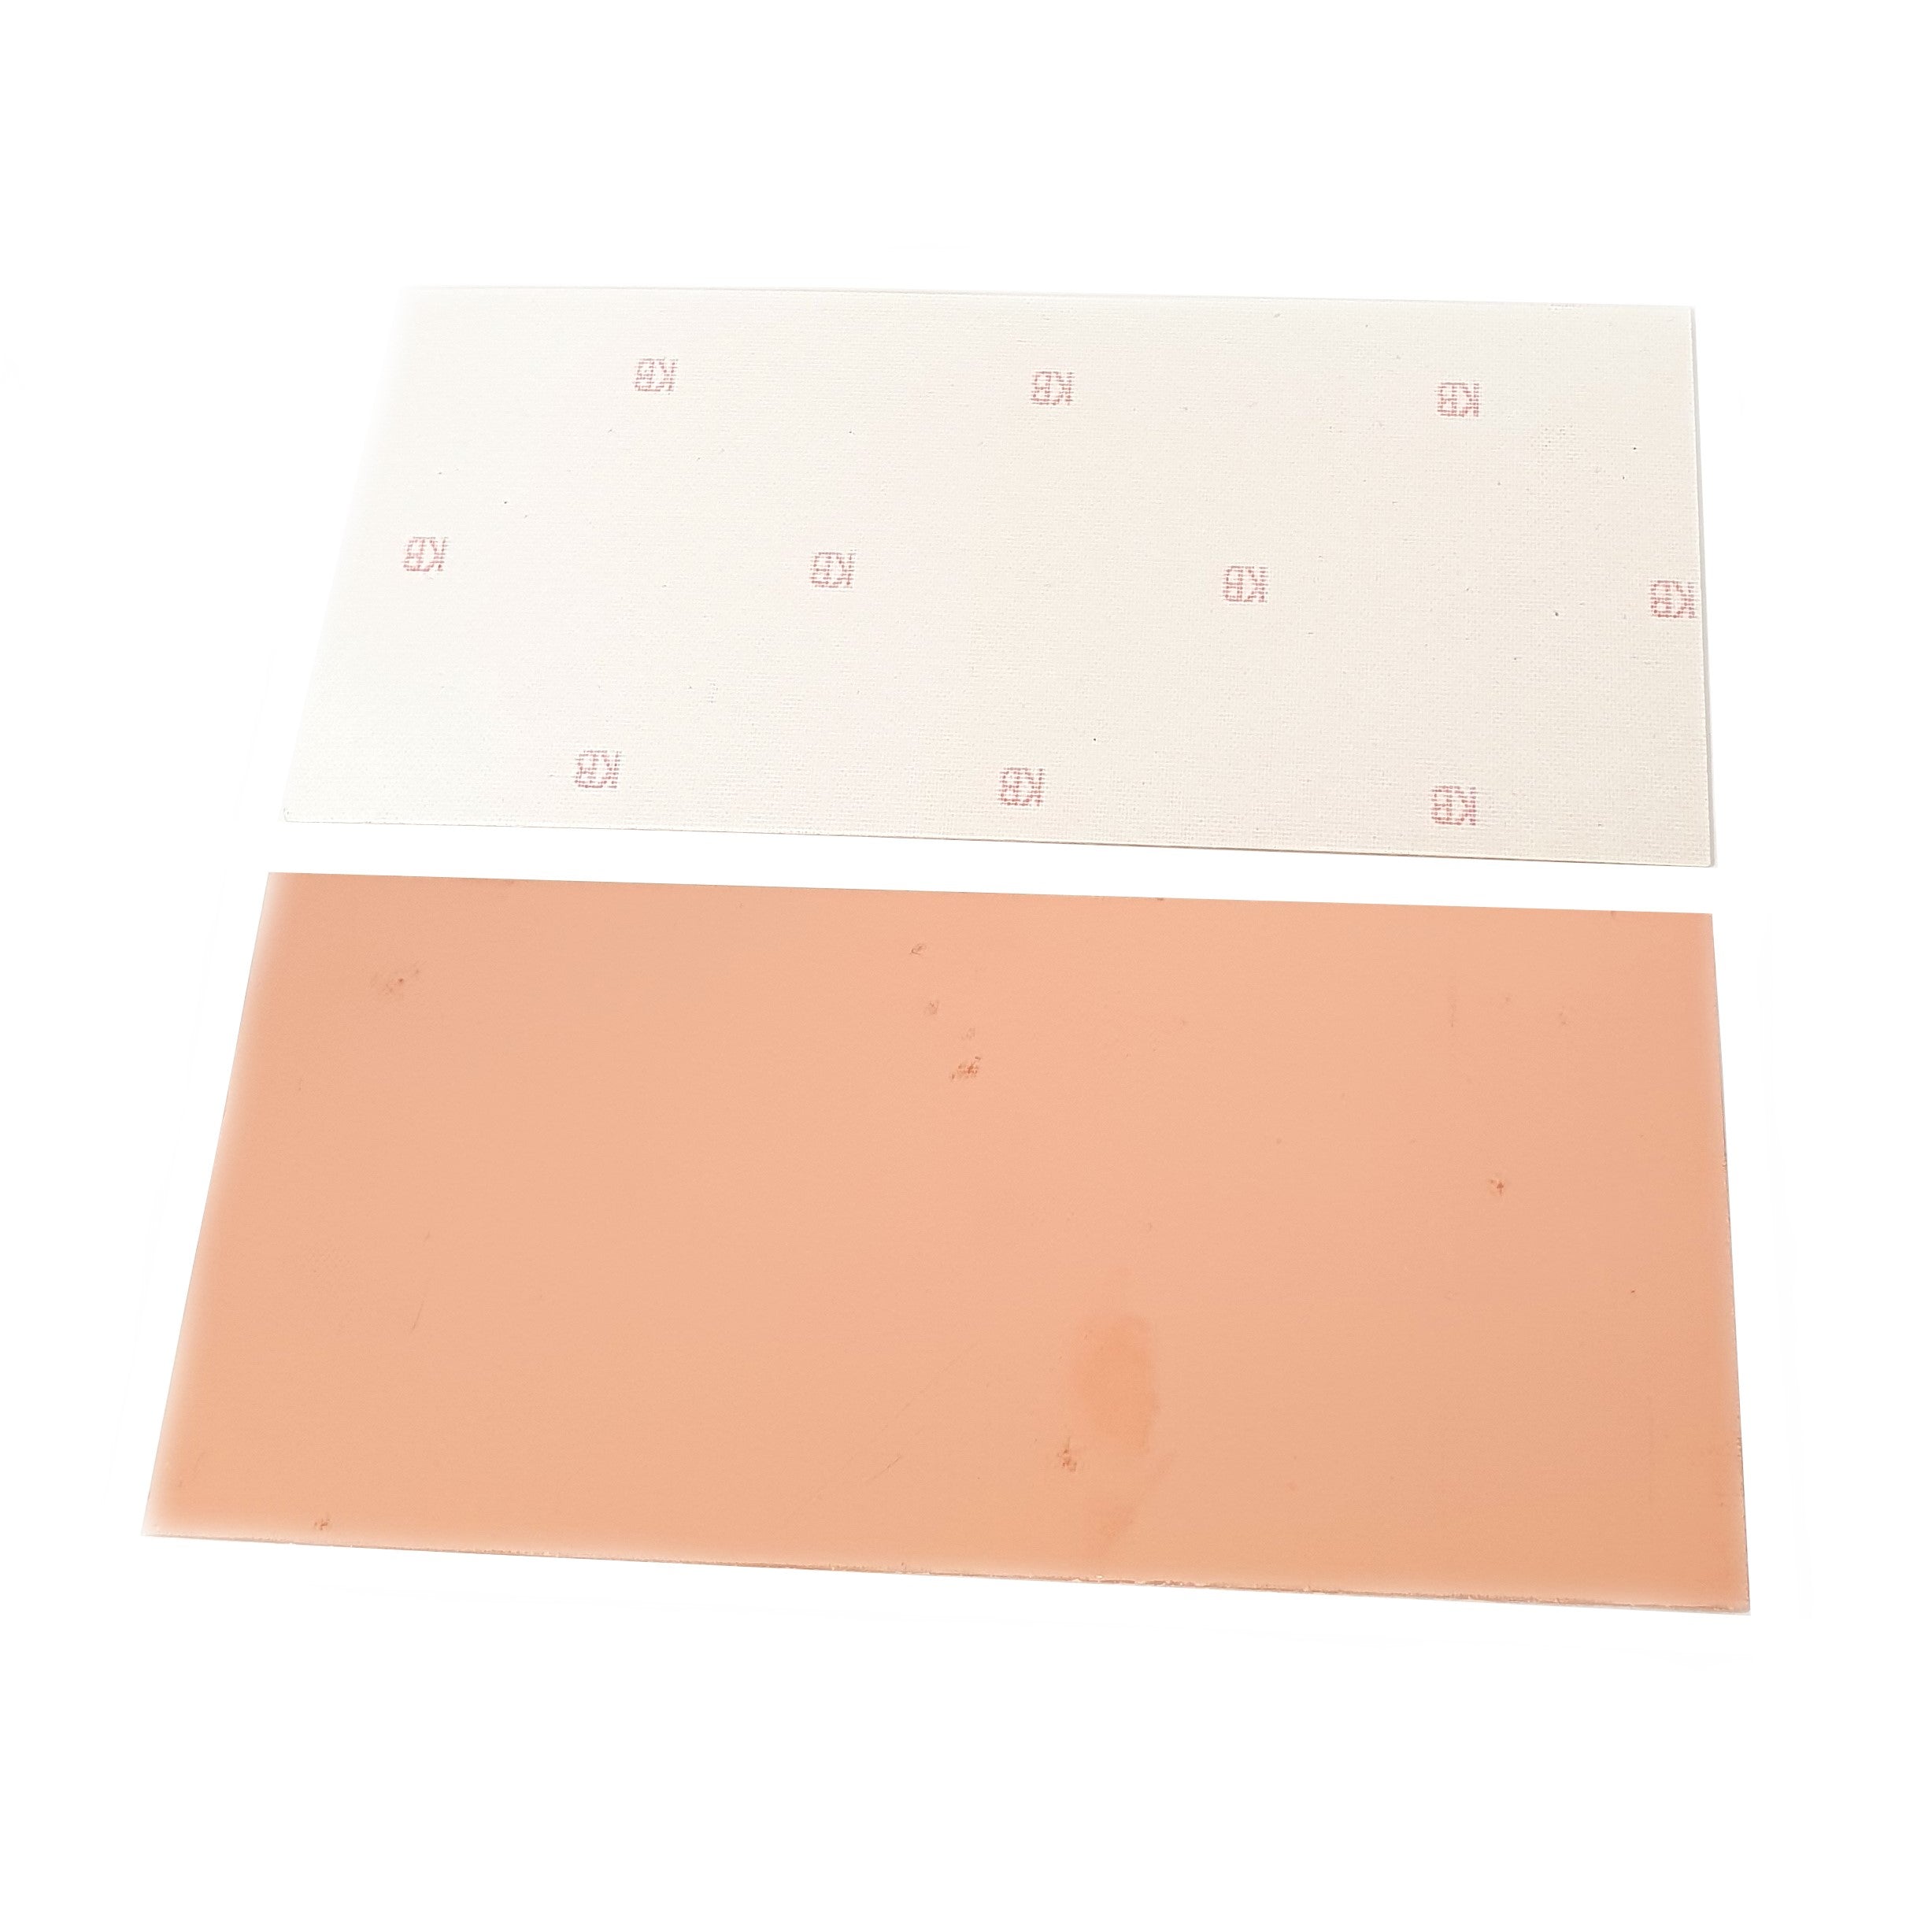 Single Sided Copper Clad Board 100x220mm